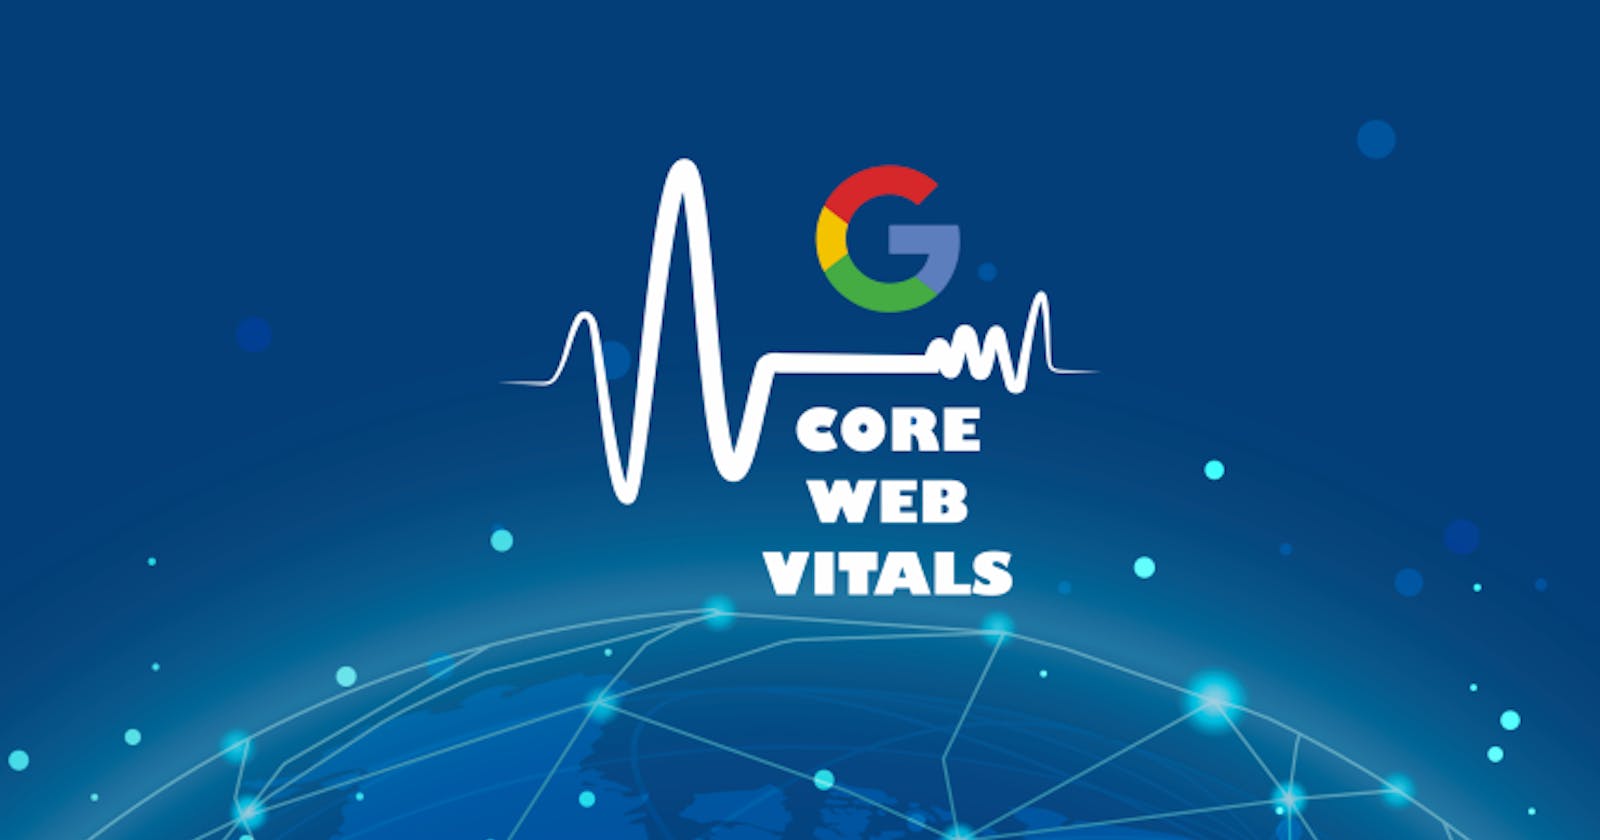 O que são os Core Web Vitals?